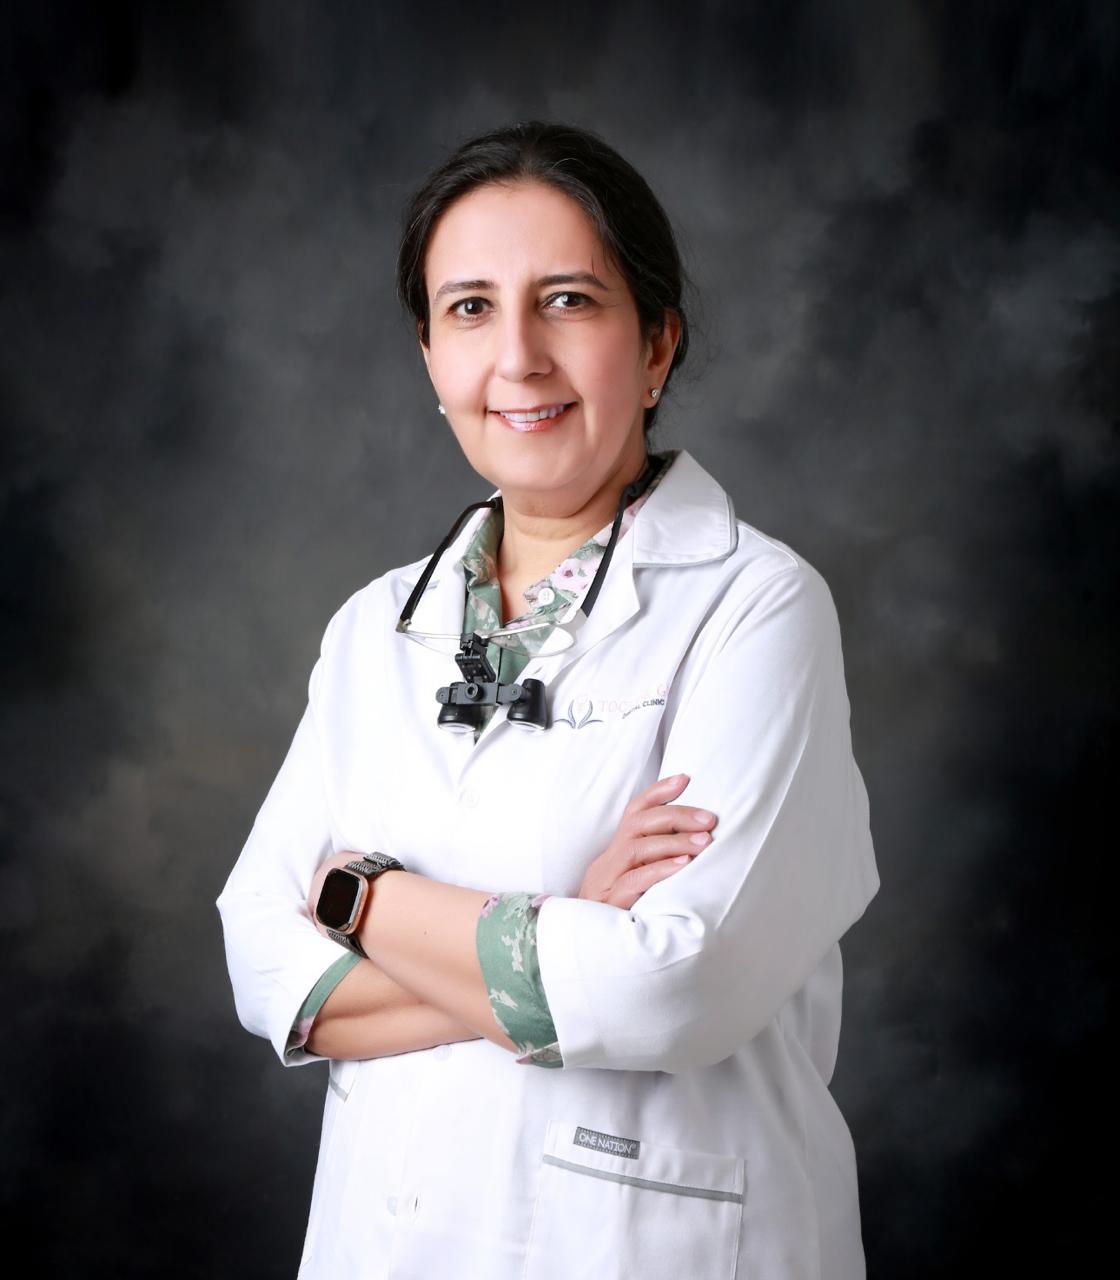 Dr Jyoti C Bhasin